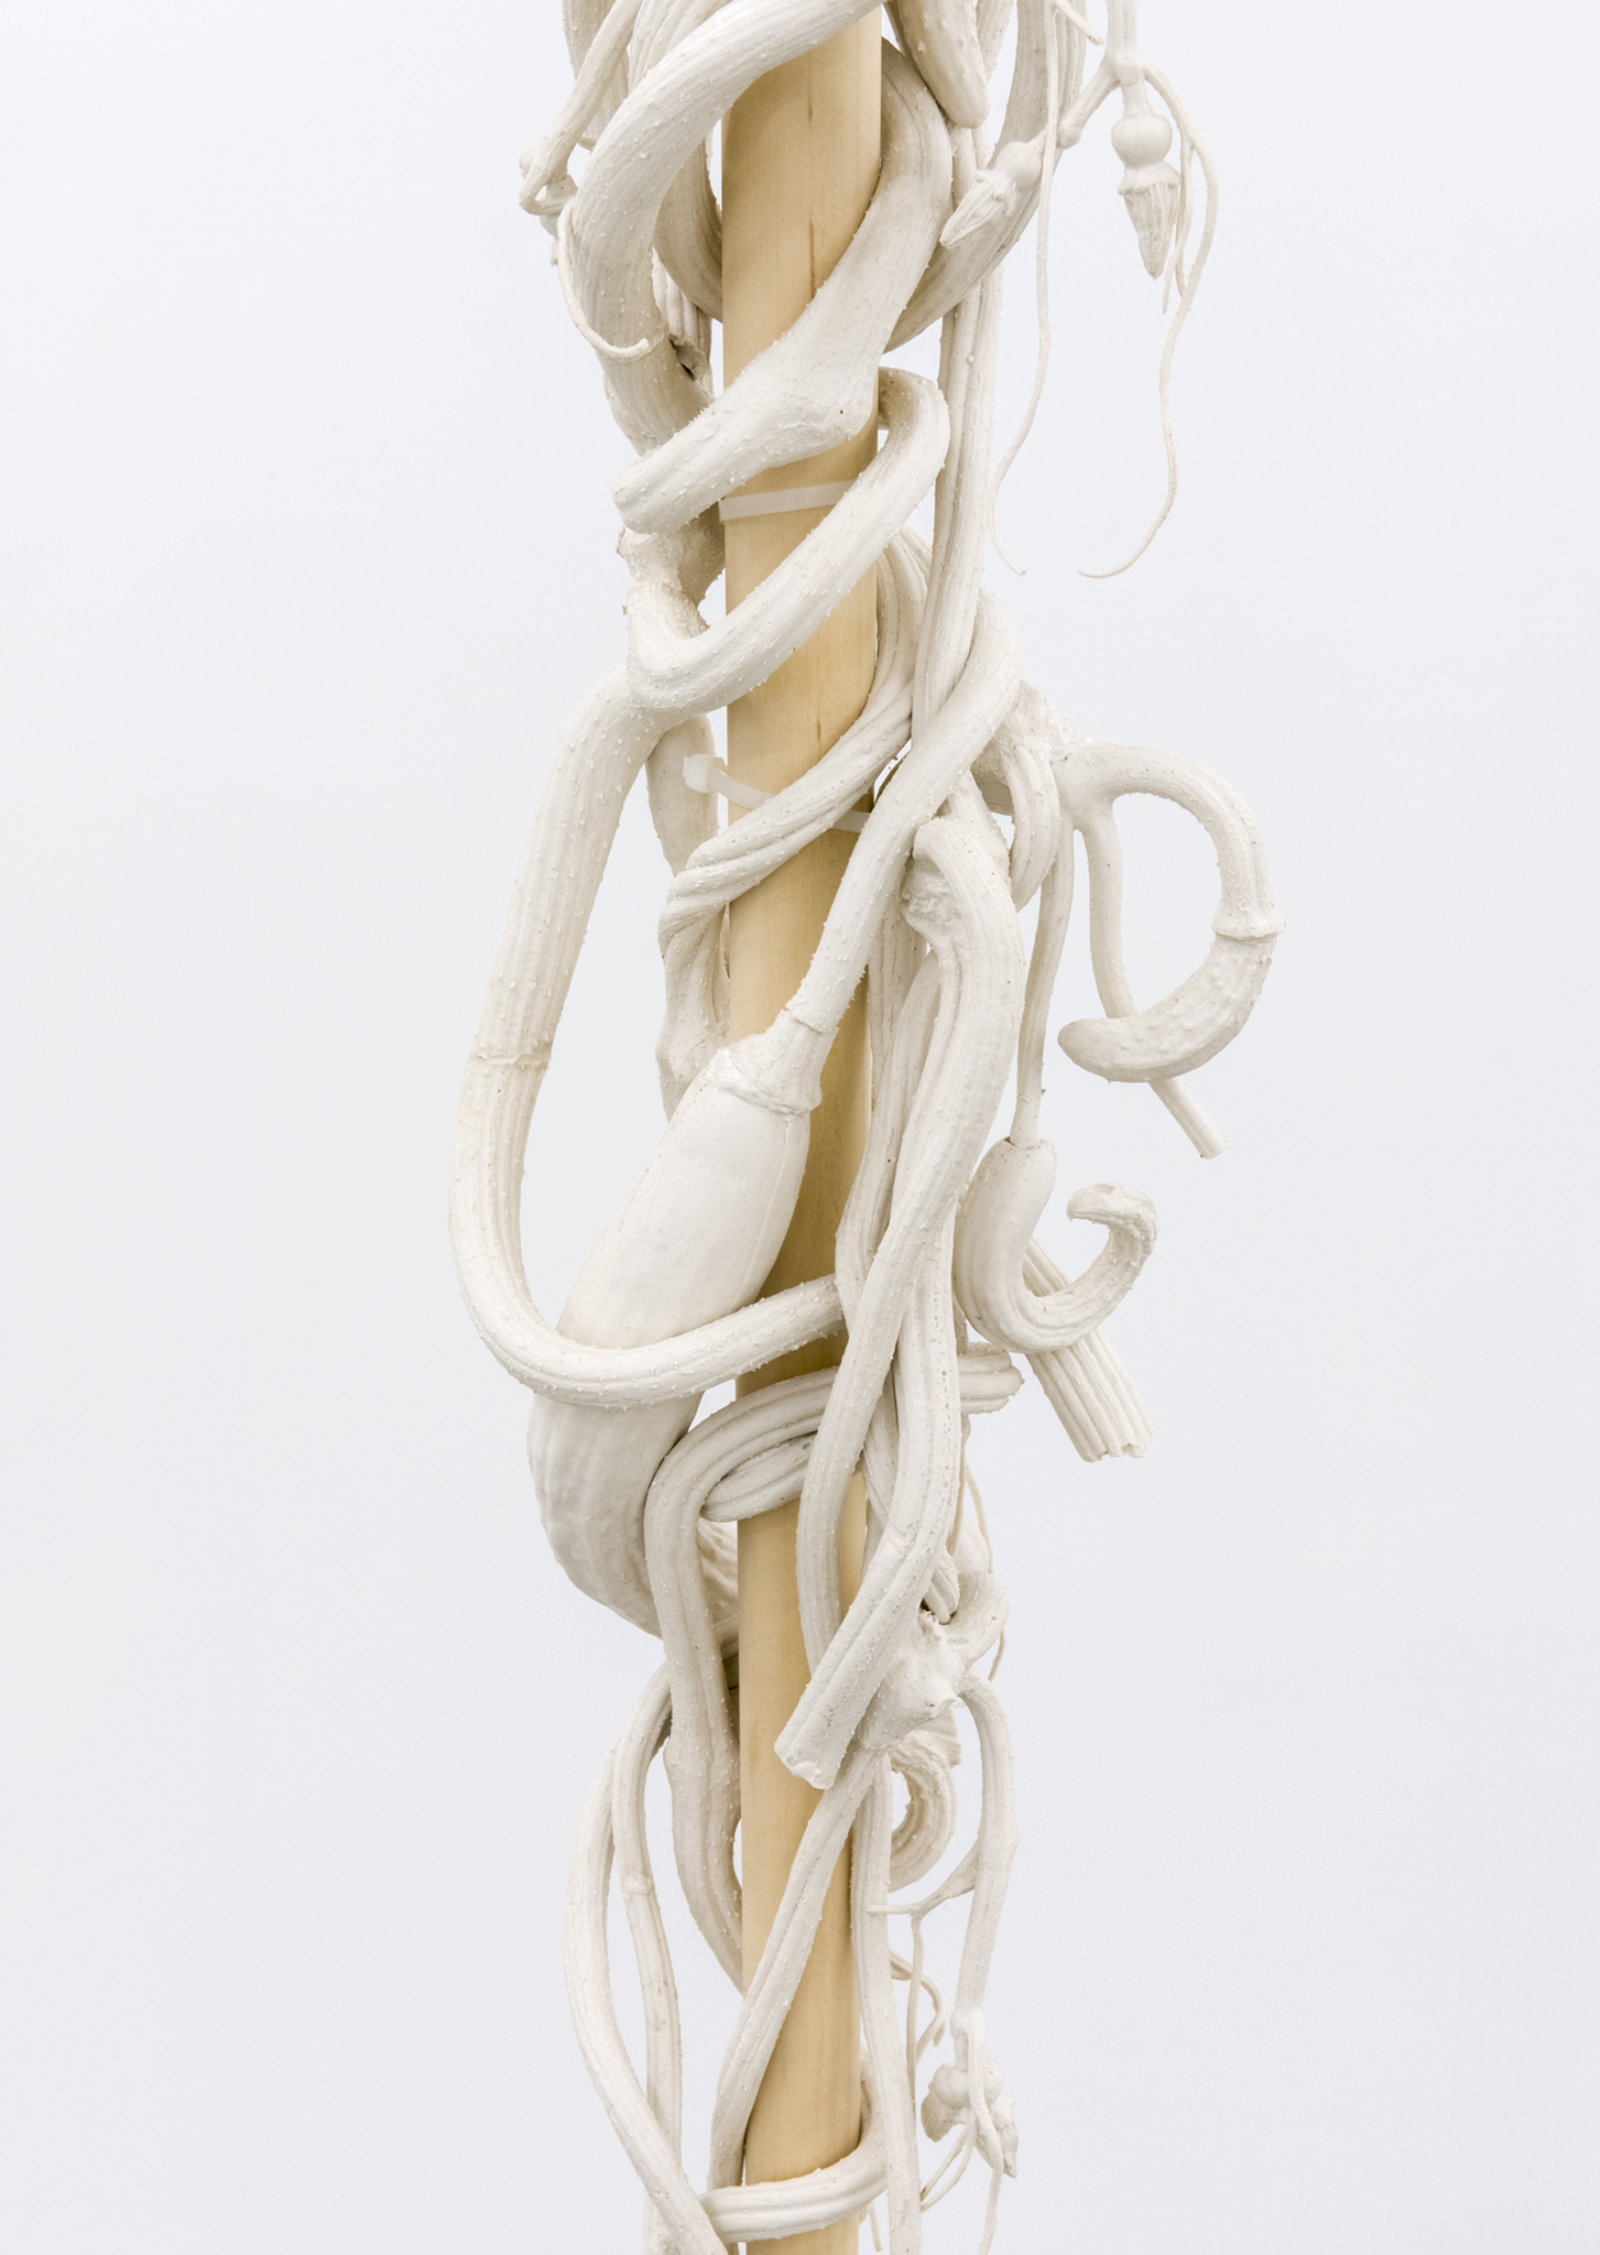 Liz Magor, Eddie’s White Wonder (detail), 1994, silicone rubber, wood, 163 x 10 x 10 in. (414 x 25 x 25 cm)